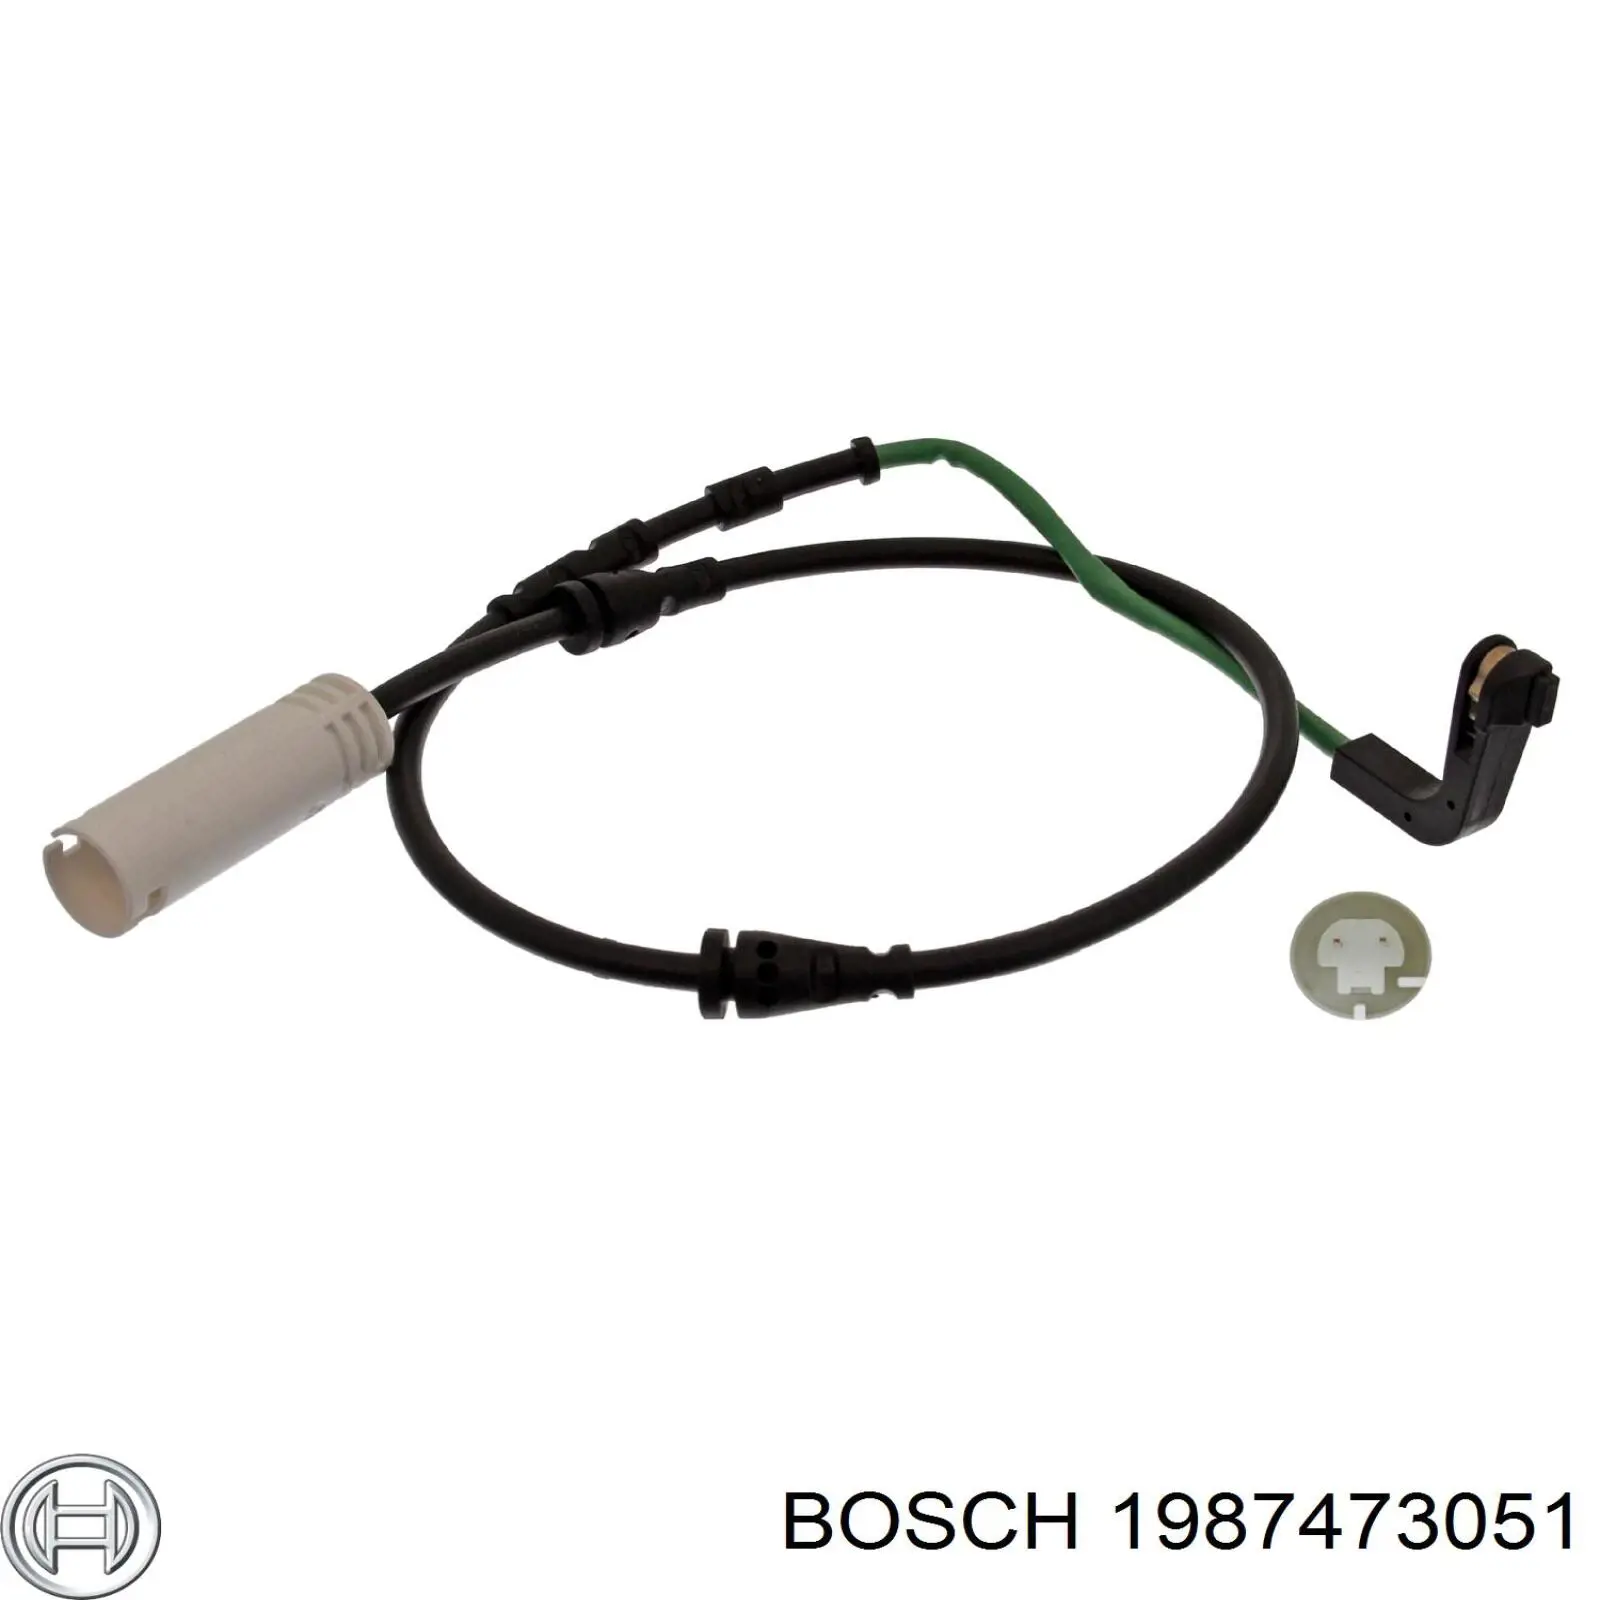 1 987 473 051 Bosch contacto de aviso, desgaste de los frenos, delantero izquierdo